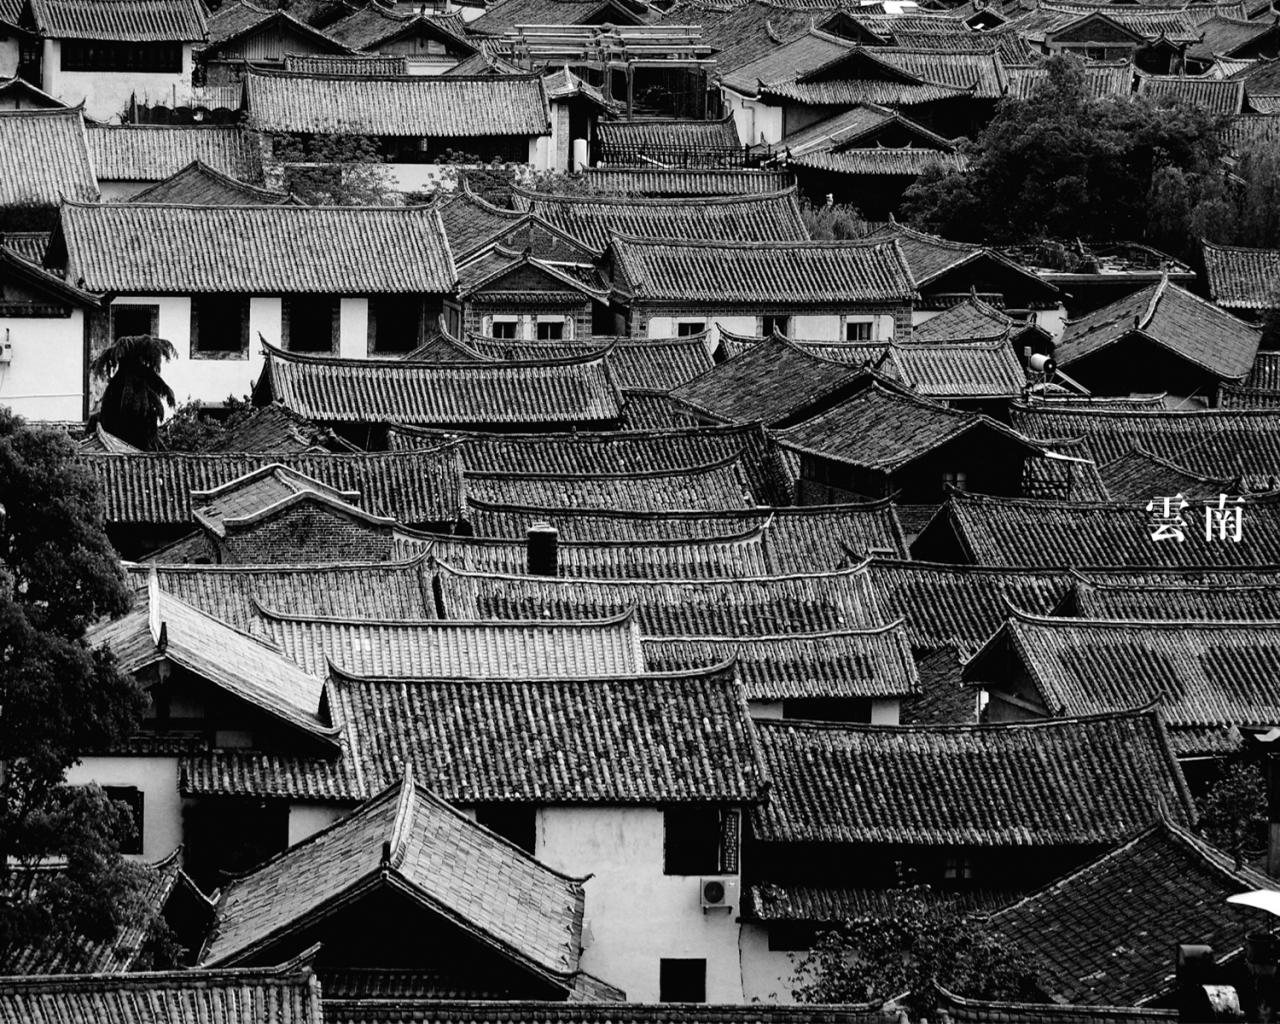 Китайская деревня